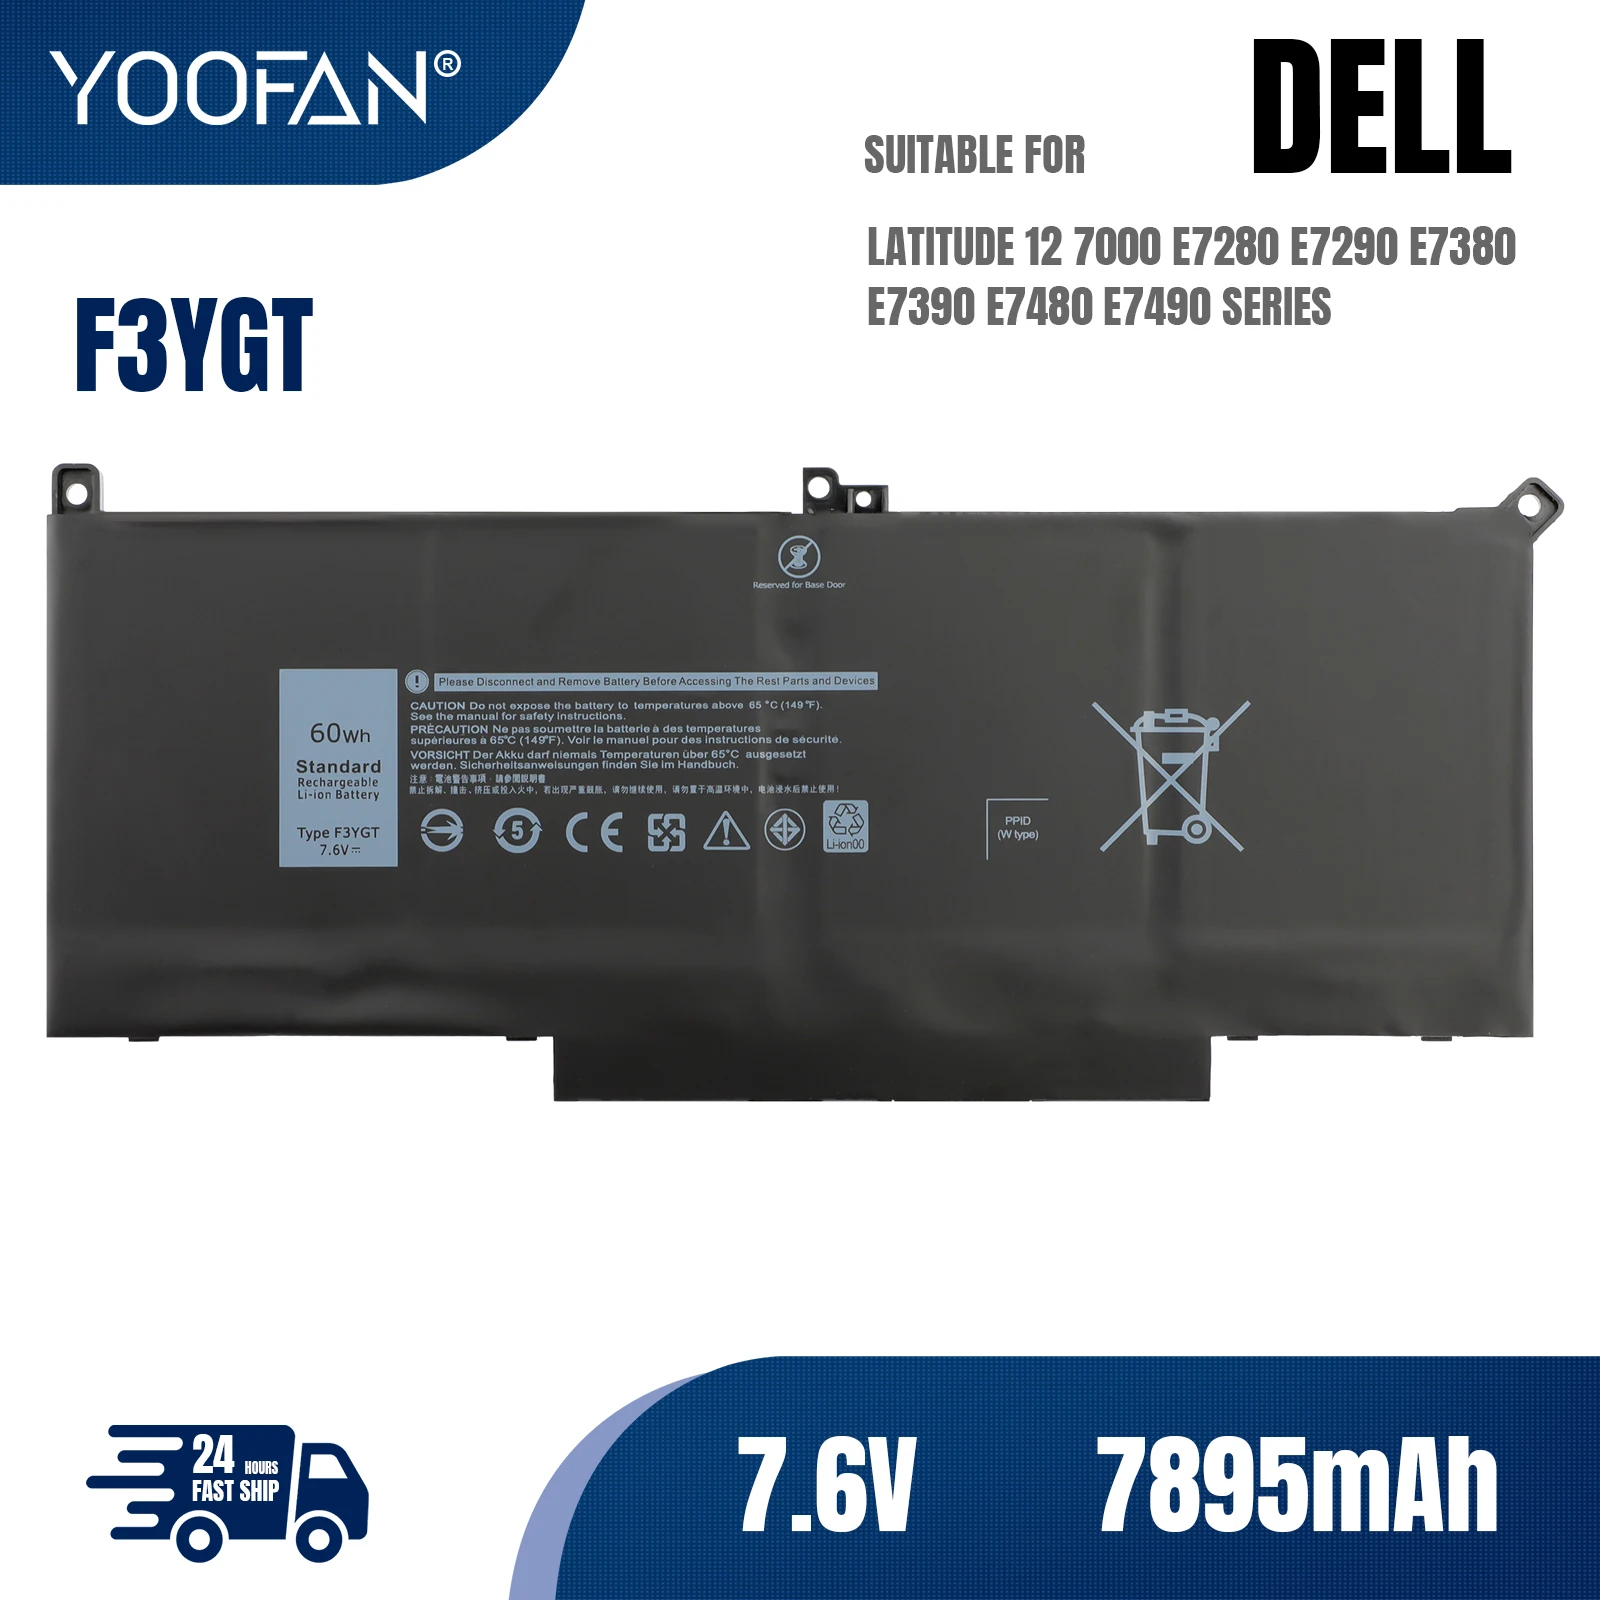 

YOOFAN F3YGT Laptop Battery 7.6V 7895mah for Dell Latitude 12 7000 E7280 E7290 E7380 E7390 E7480 E7490 F3YGT 2X39G DJ1J0 Laptop